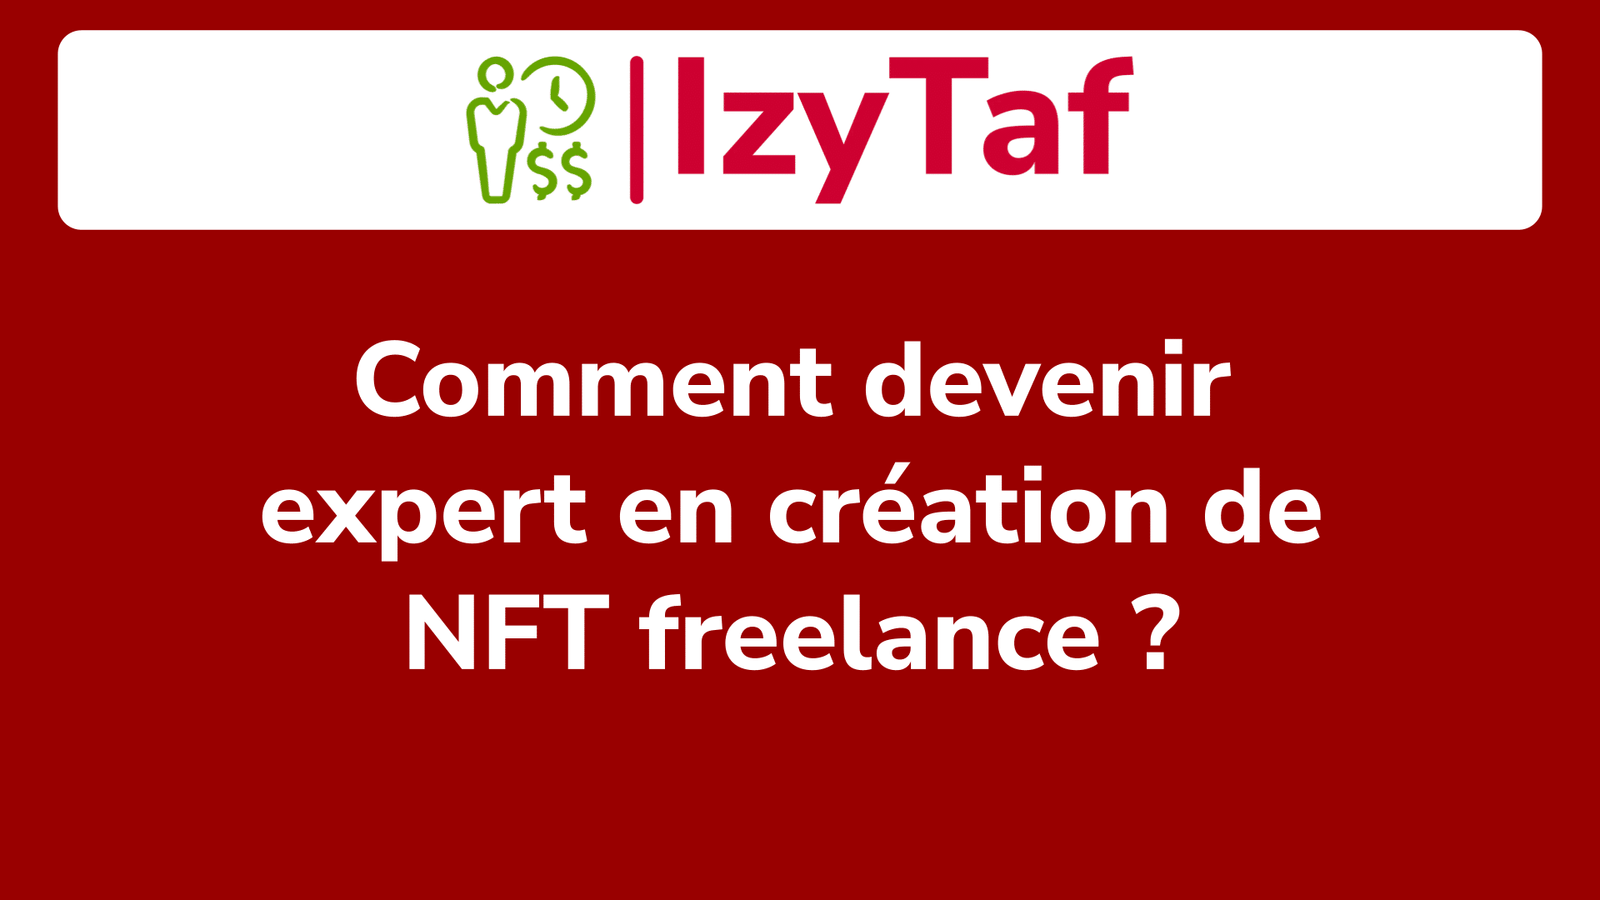 Comment devenir expert en création de NFT freelance